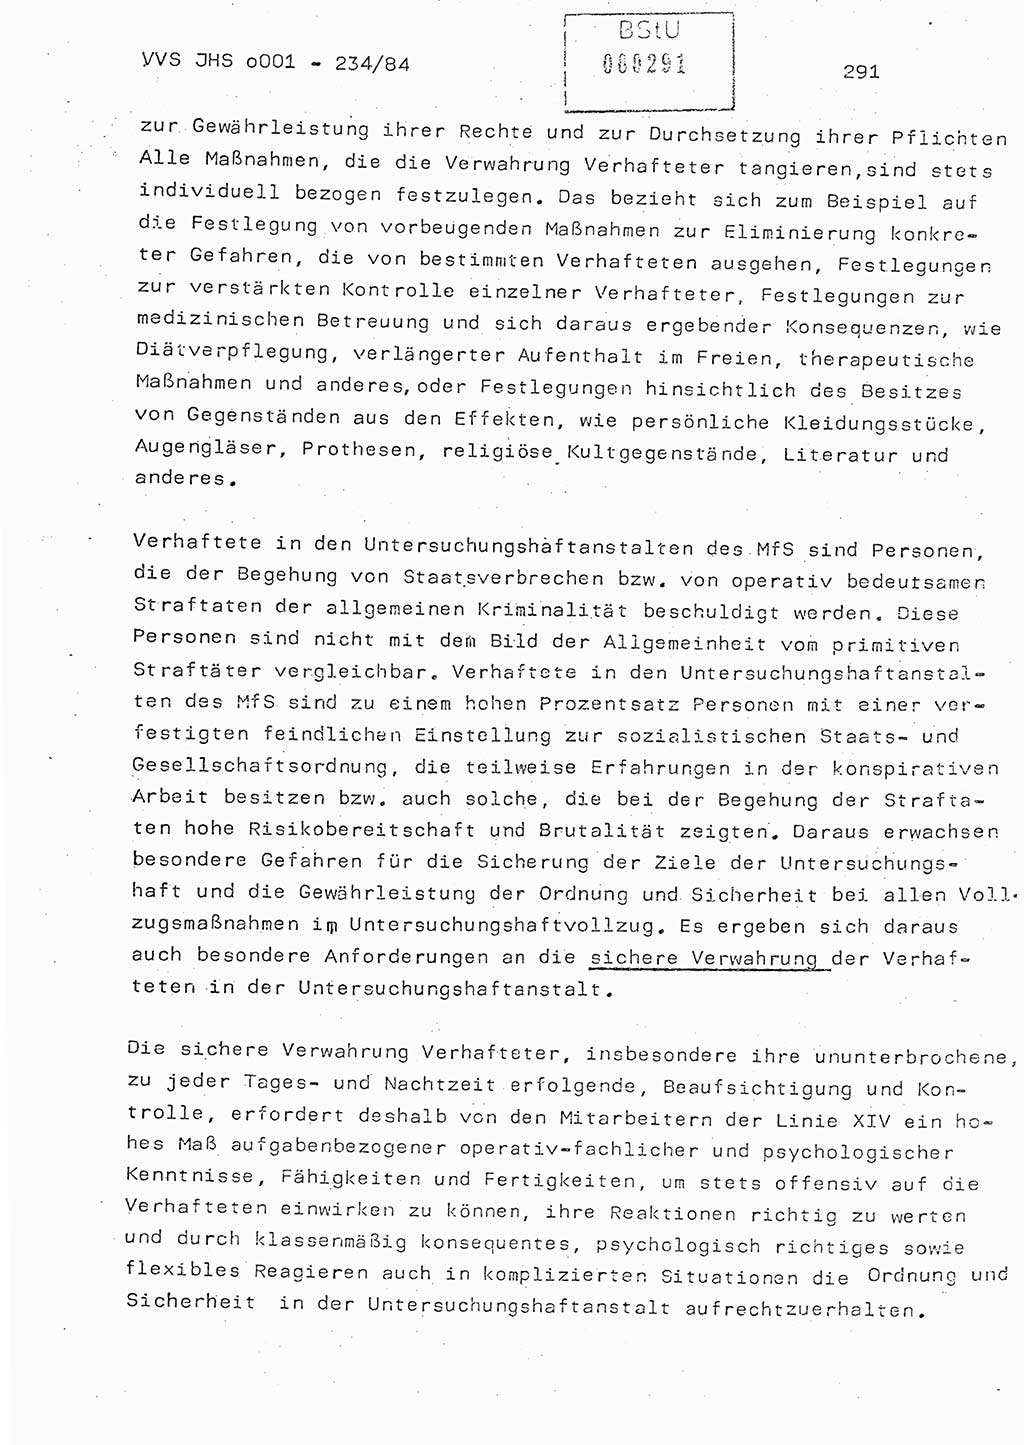 Dissertation Oberst Siegfried Rataizick (Abt. ⅩⅣ), Oberstleutnant Volkmar Heinz (Abt. ⅩⅣ), Oberstleutnant Werner Stein (HA Ⅸ), Hauptmann Heinz Conrad (JHS), Ministerium für Staatssicherheit (MfS) [Deutsche Demokratische Republik (DDR)], Juristische Hochschule (JHS), Vertrauliche Verschlußsache (VVS) o001-234/84, Potsdam 1984, Seite 291 (Diss. MfS DDR JHS VVS o001-234/84 1984, S. 291)